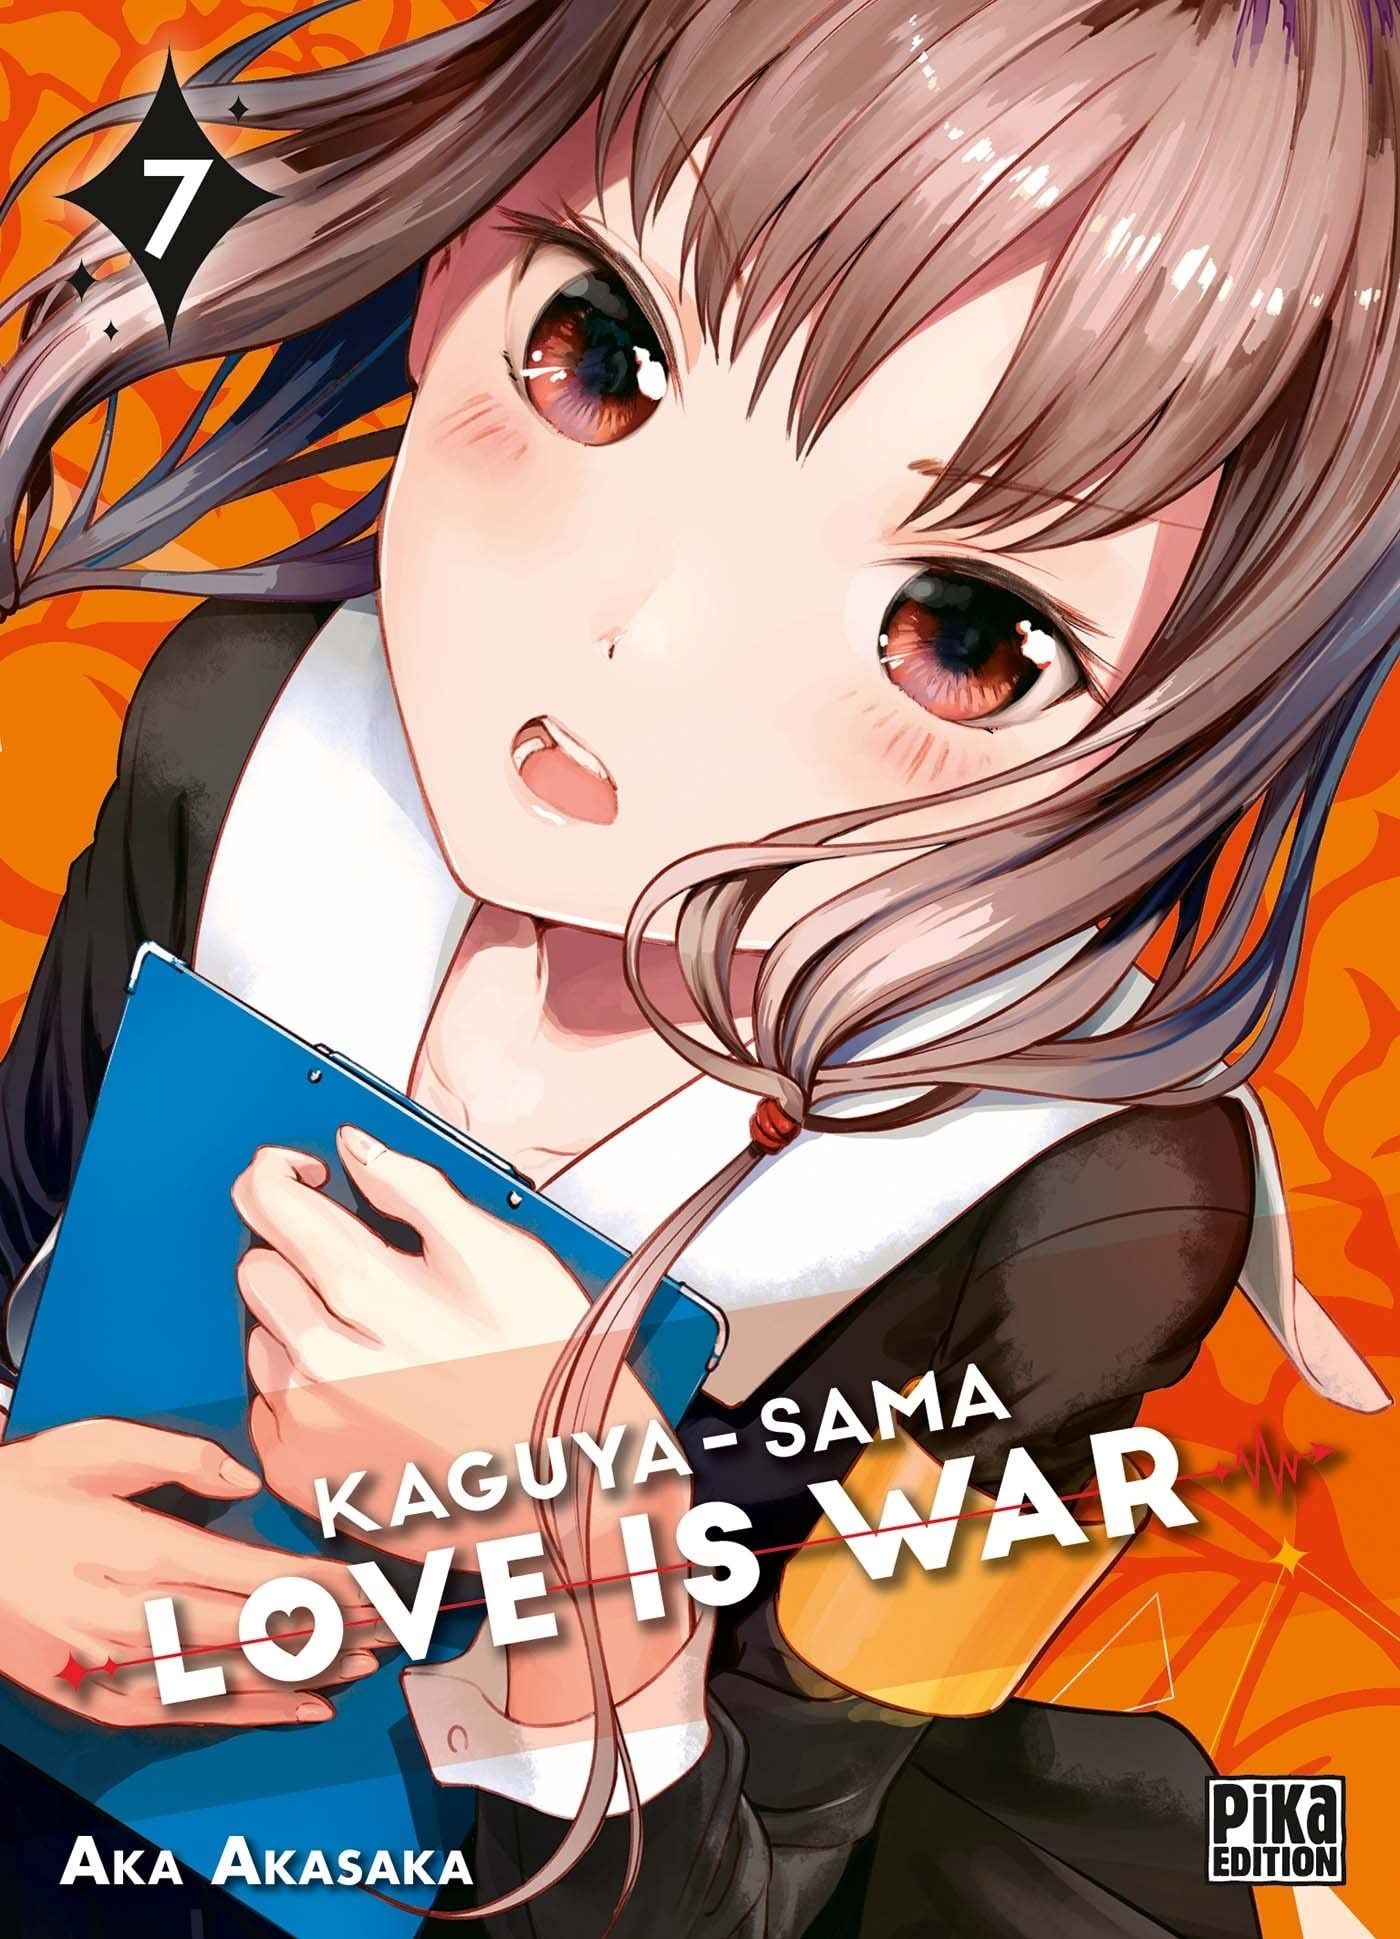 Kaguya-sama - Love is War Vol.7